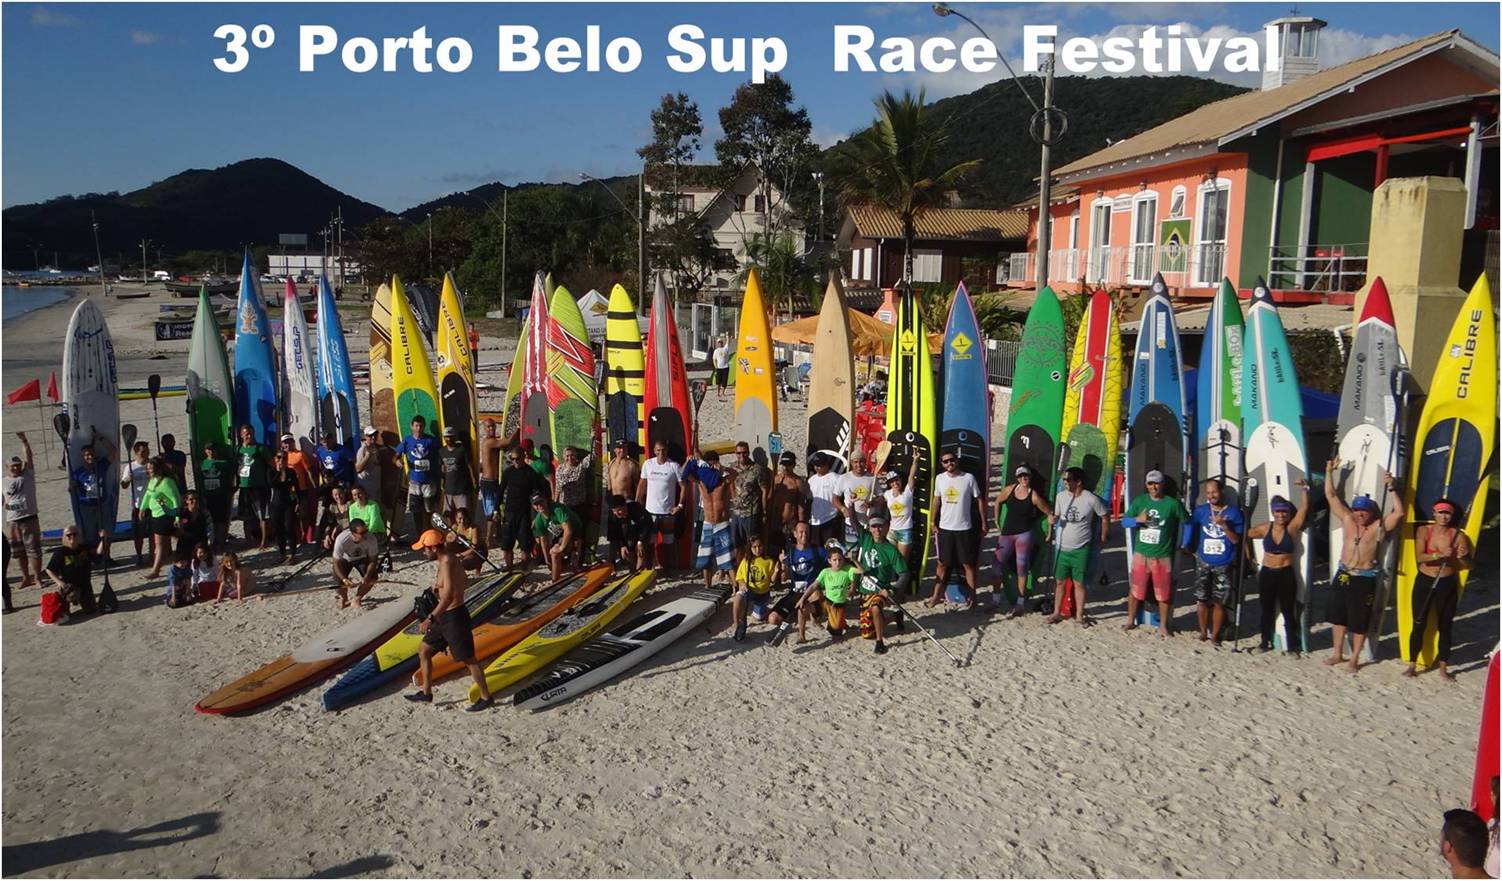 Pranchas de Stand Up Paddle colorem a baía de Porto Belo